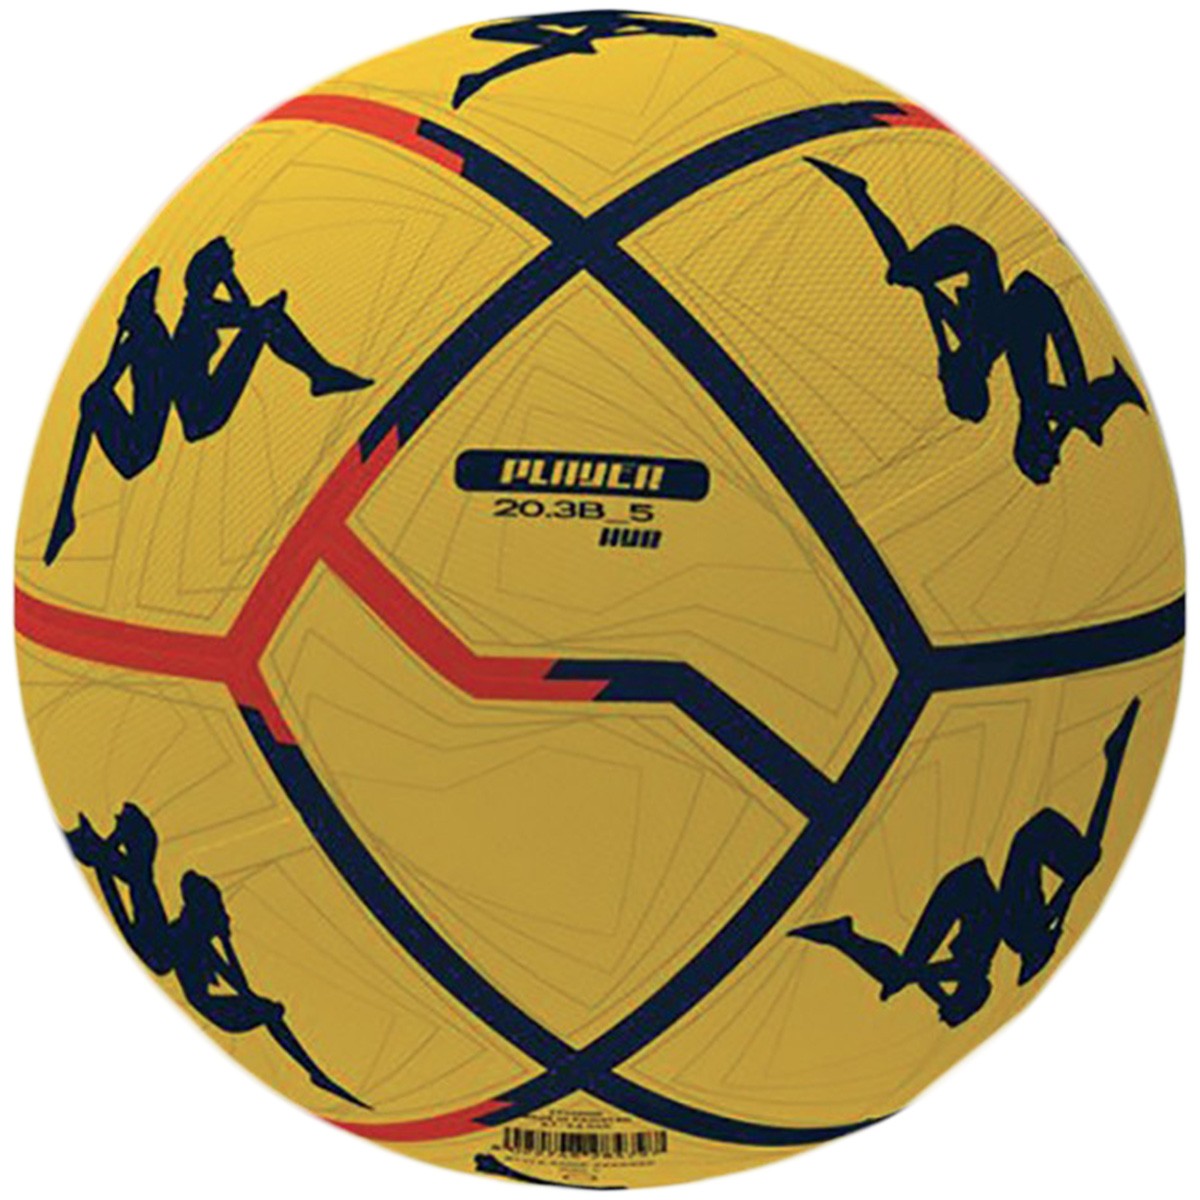 Ballon de match et entraînement Kappa Player 20.3B HYB